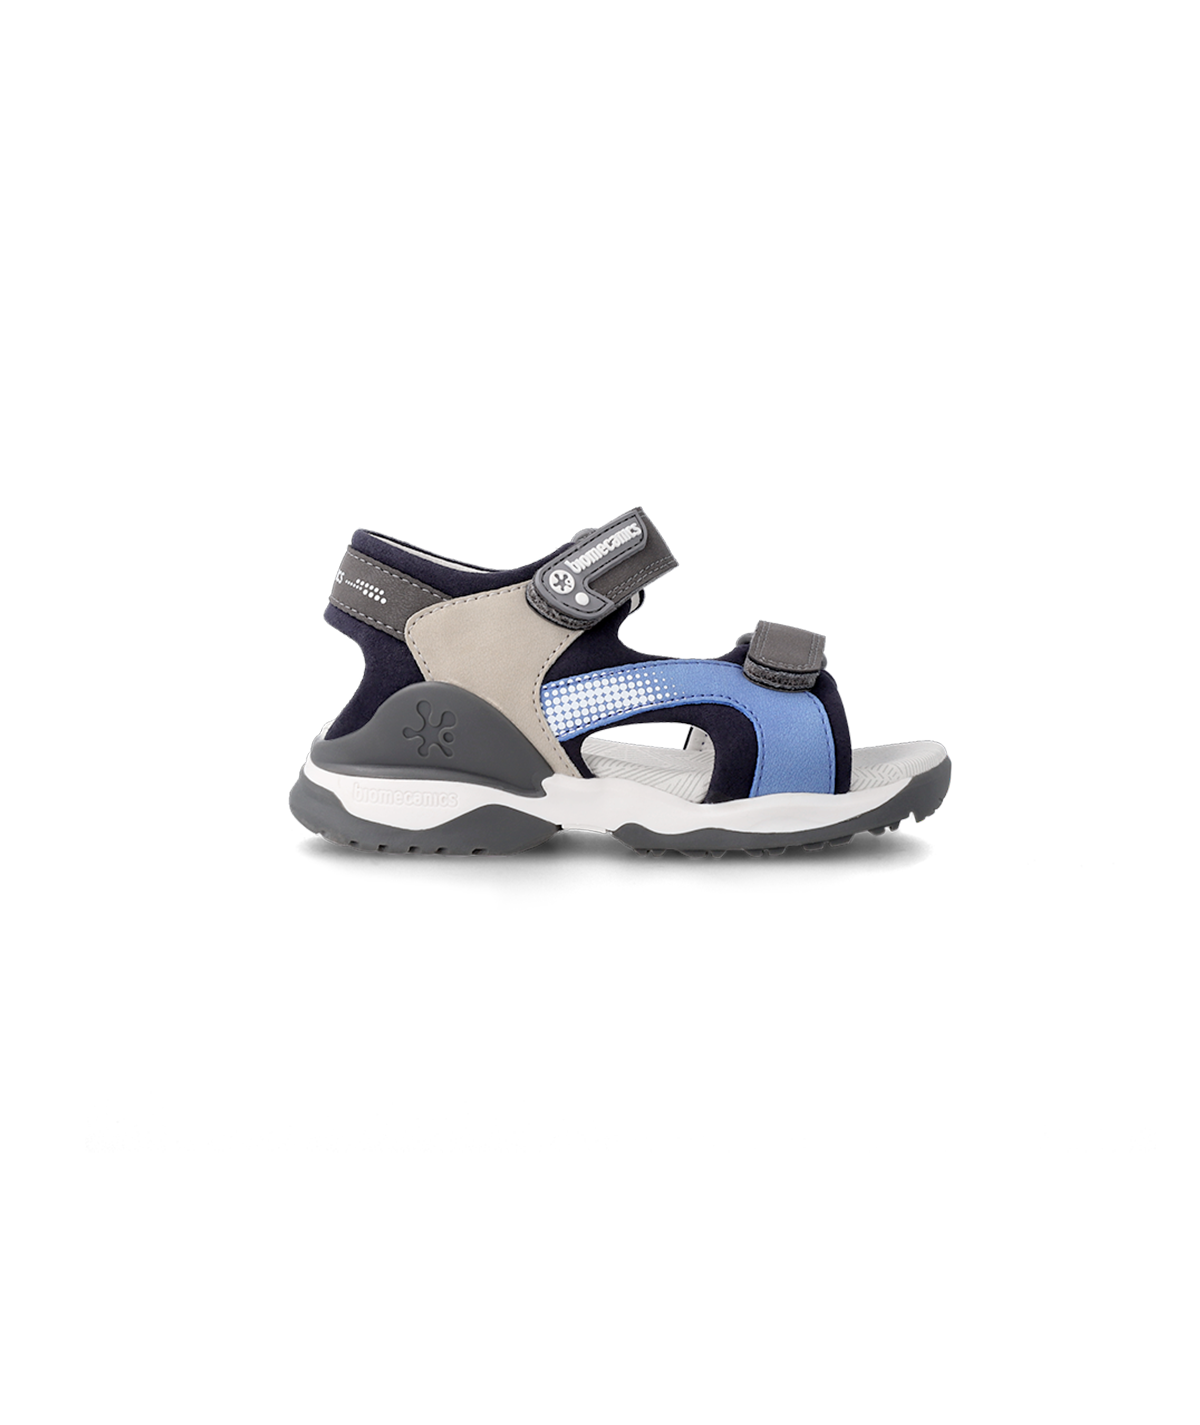 Sandales gris et bleu